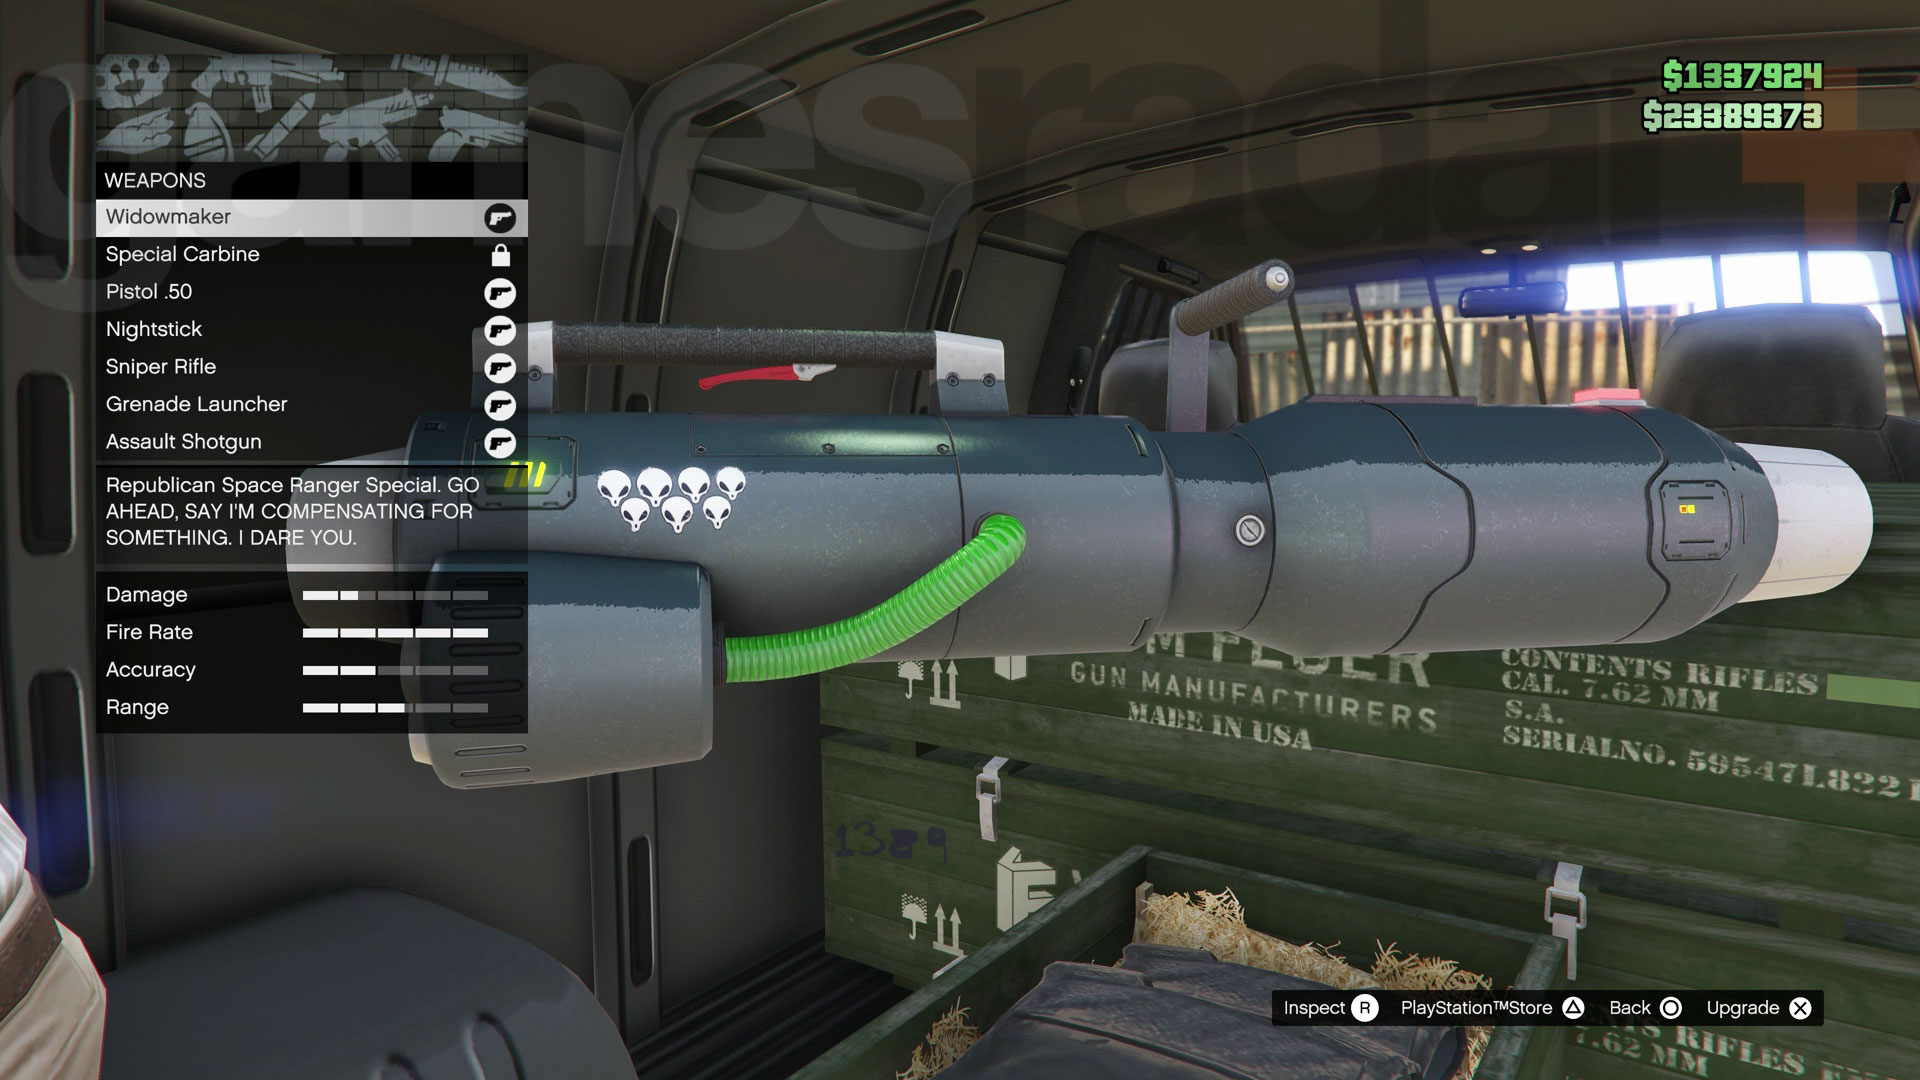 The GTA Online Gun Van inventory including the Widowmaker